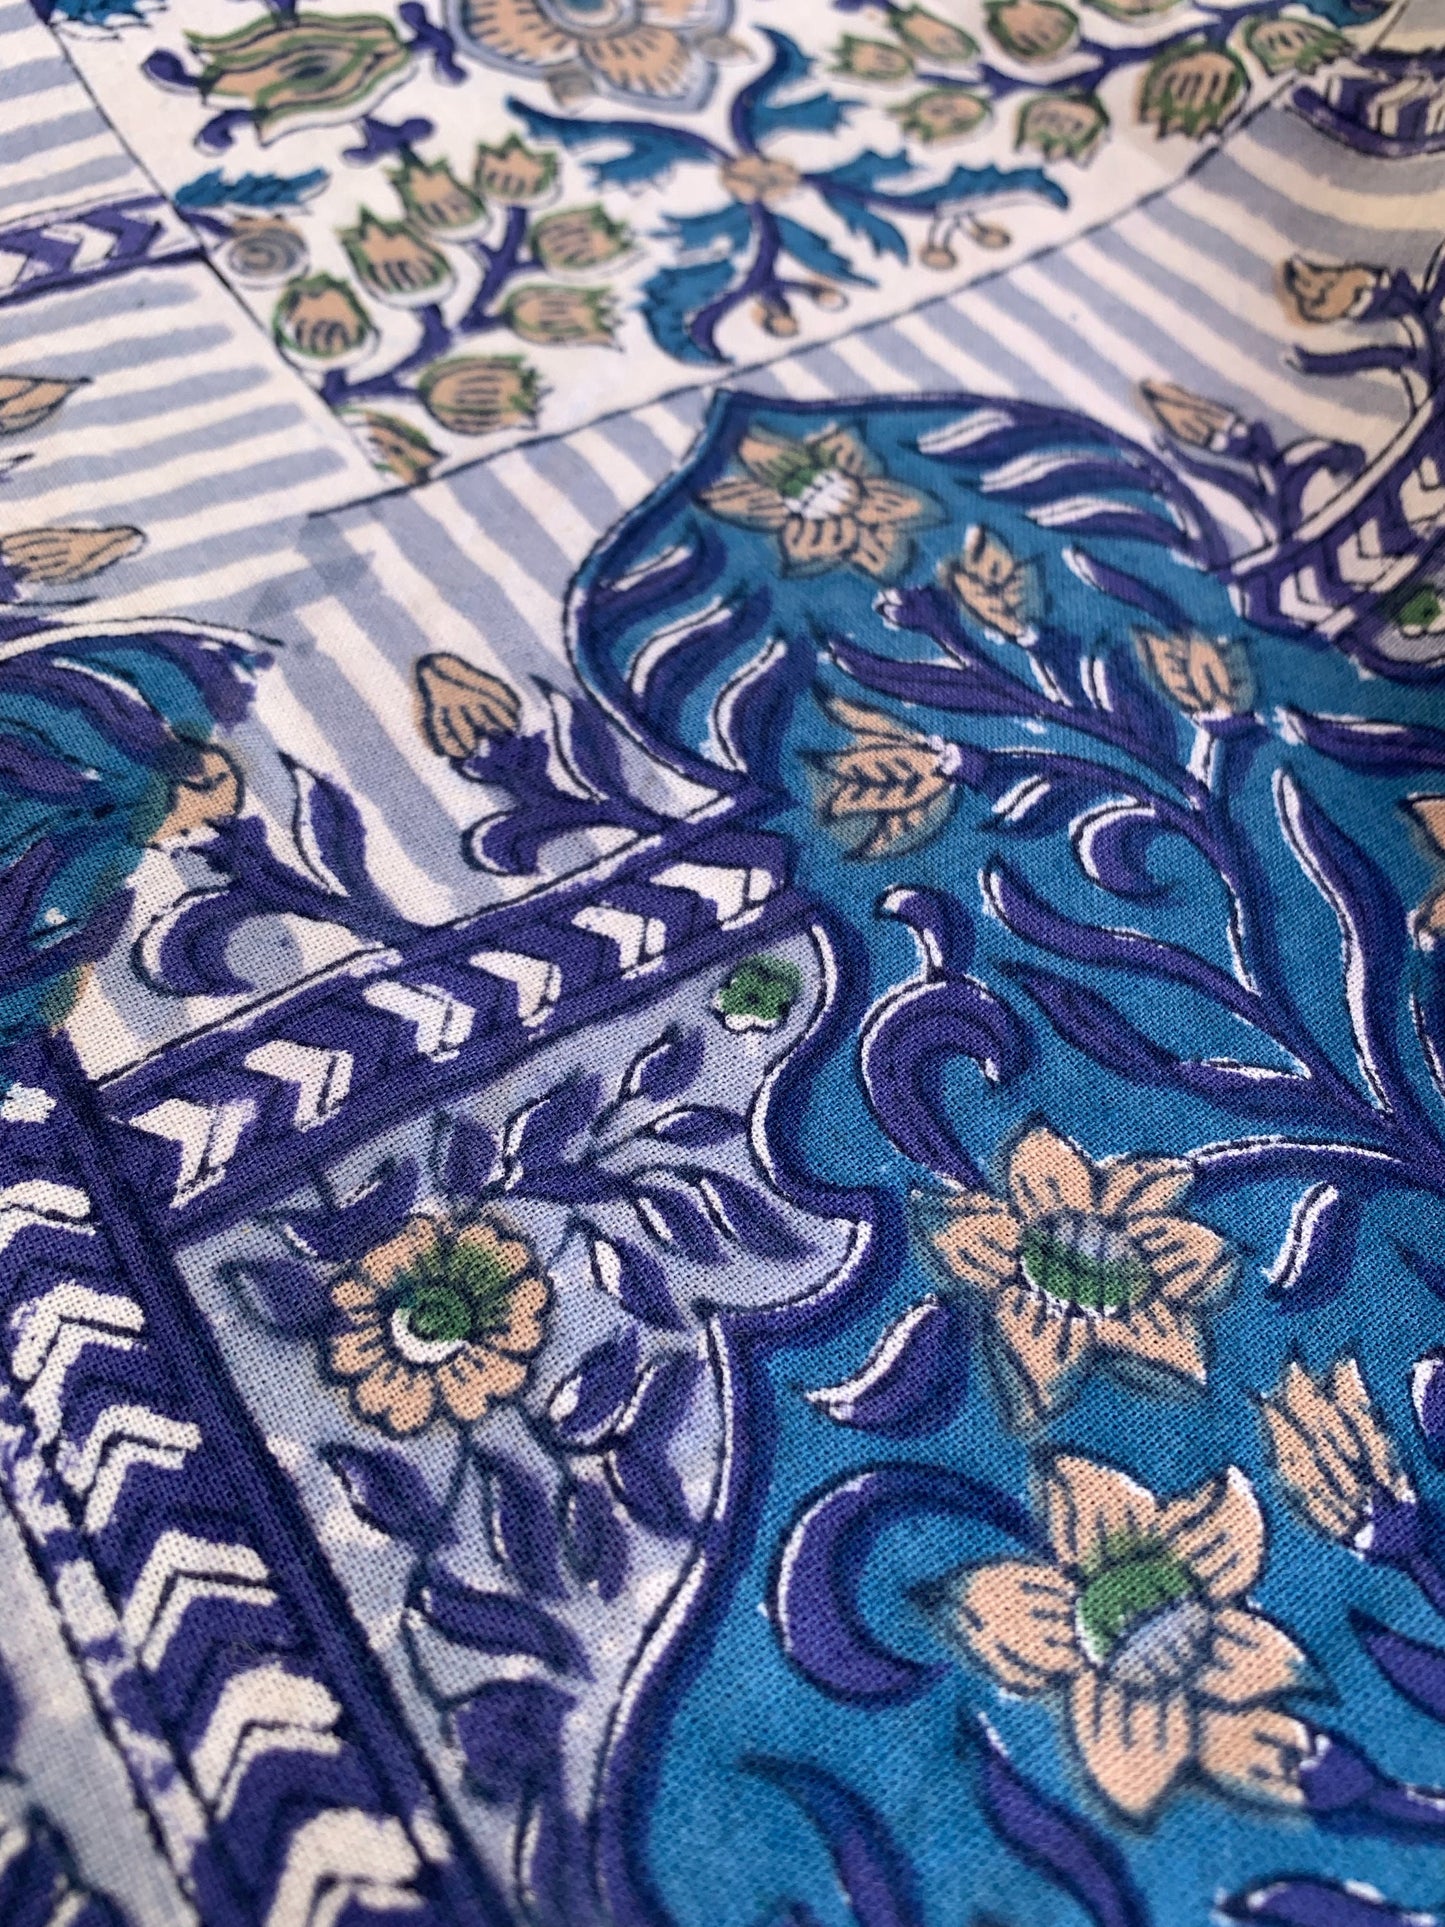 Mantel algodón puro estampado block print artesanal en India · Varias medidas a elegir · Mantel boho chic 100% algodón hindú · Azul y beige